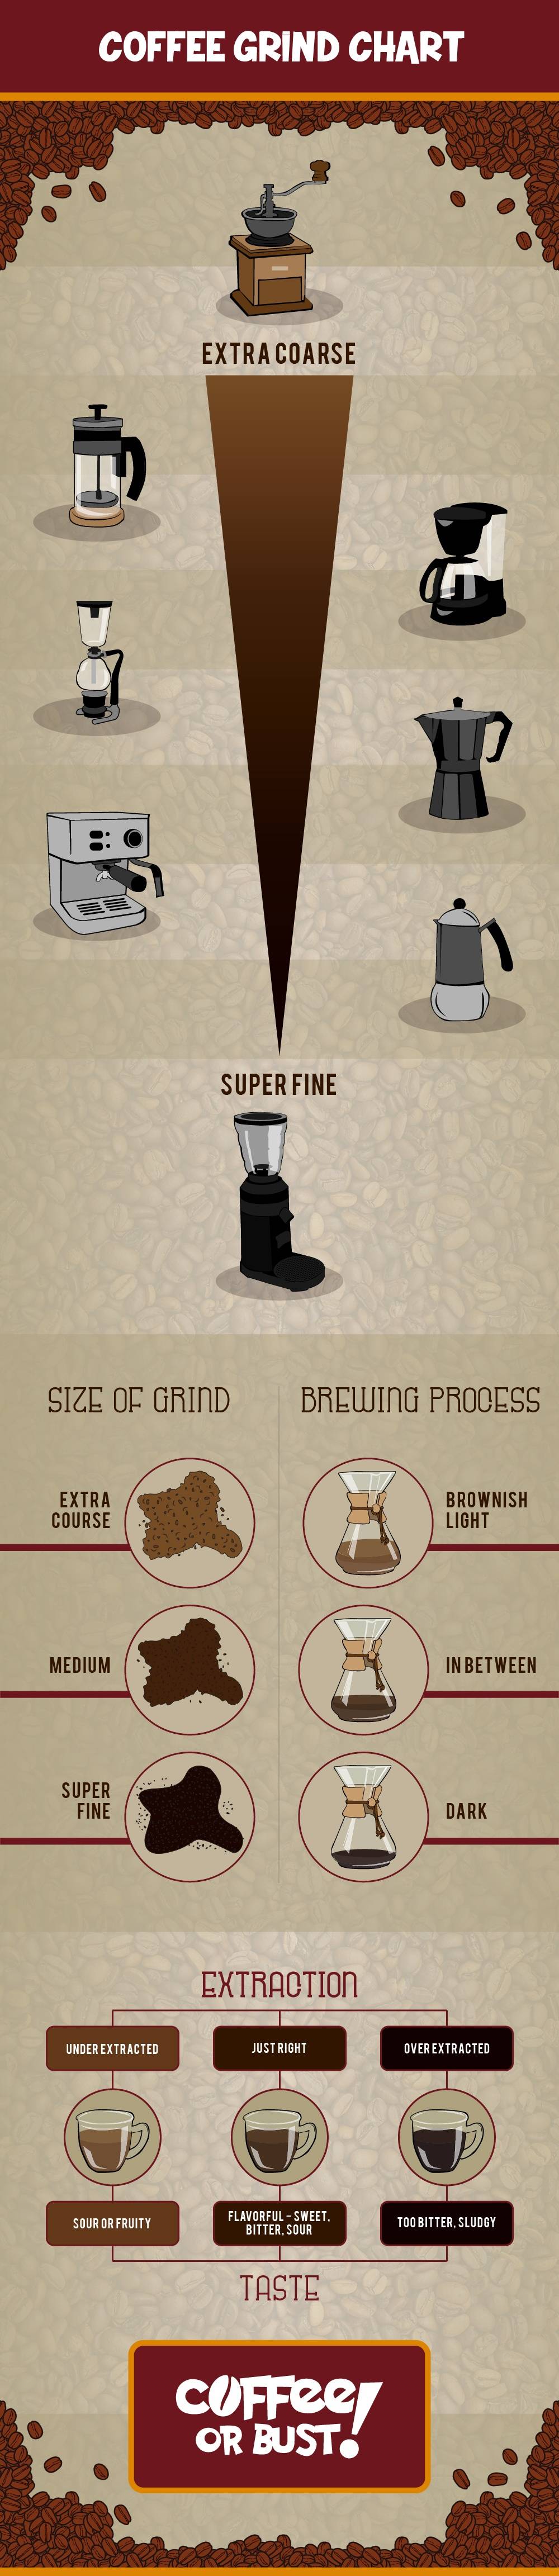 Настройка вкуса в кофемашине: помол, объём, крепость от эксперта